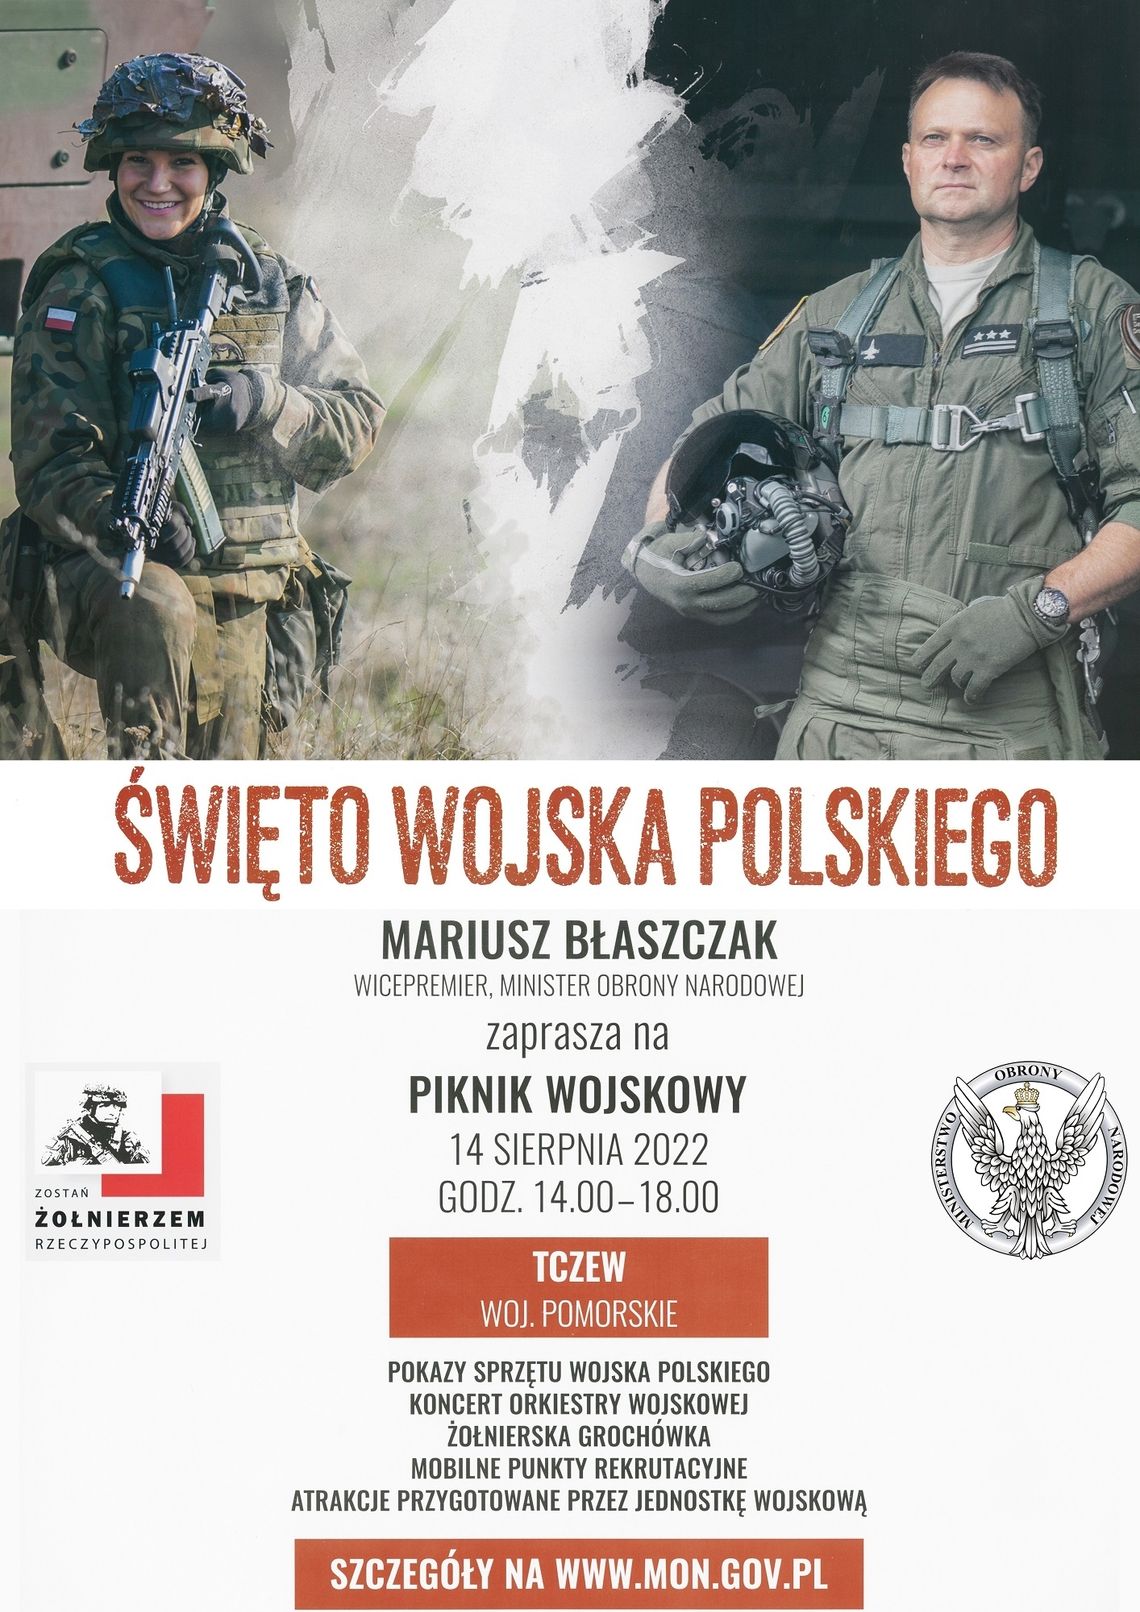 Piknik wojskowy - Święto Wojska Polskiego